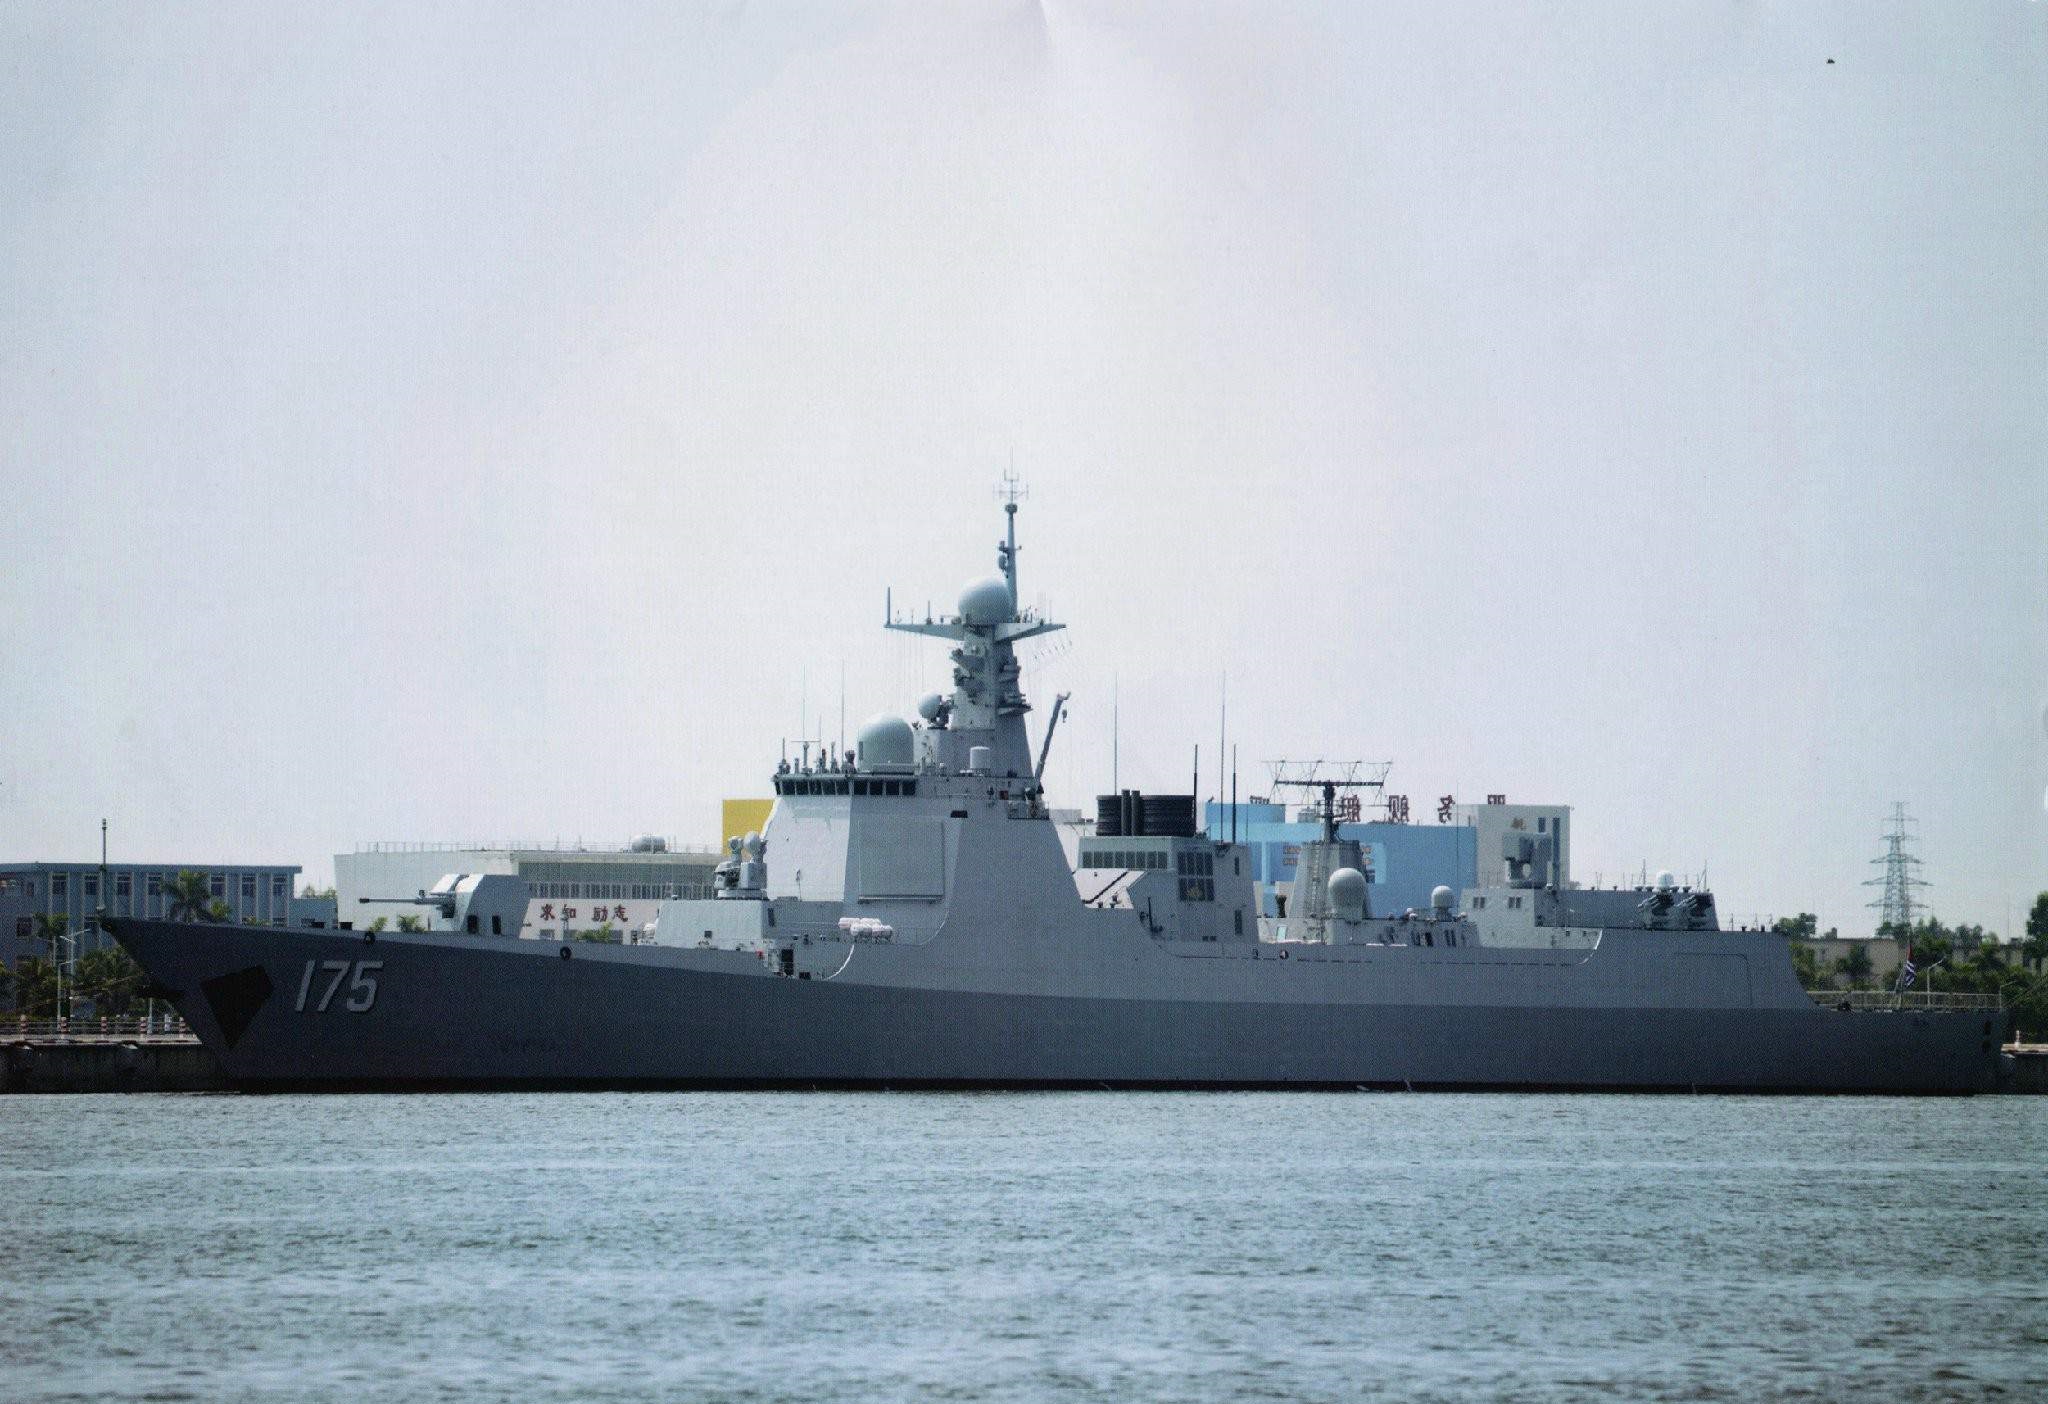 銀川號驅逐艦(052D型驅逐艦（舷號175）)